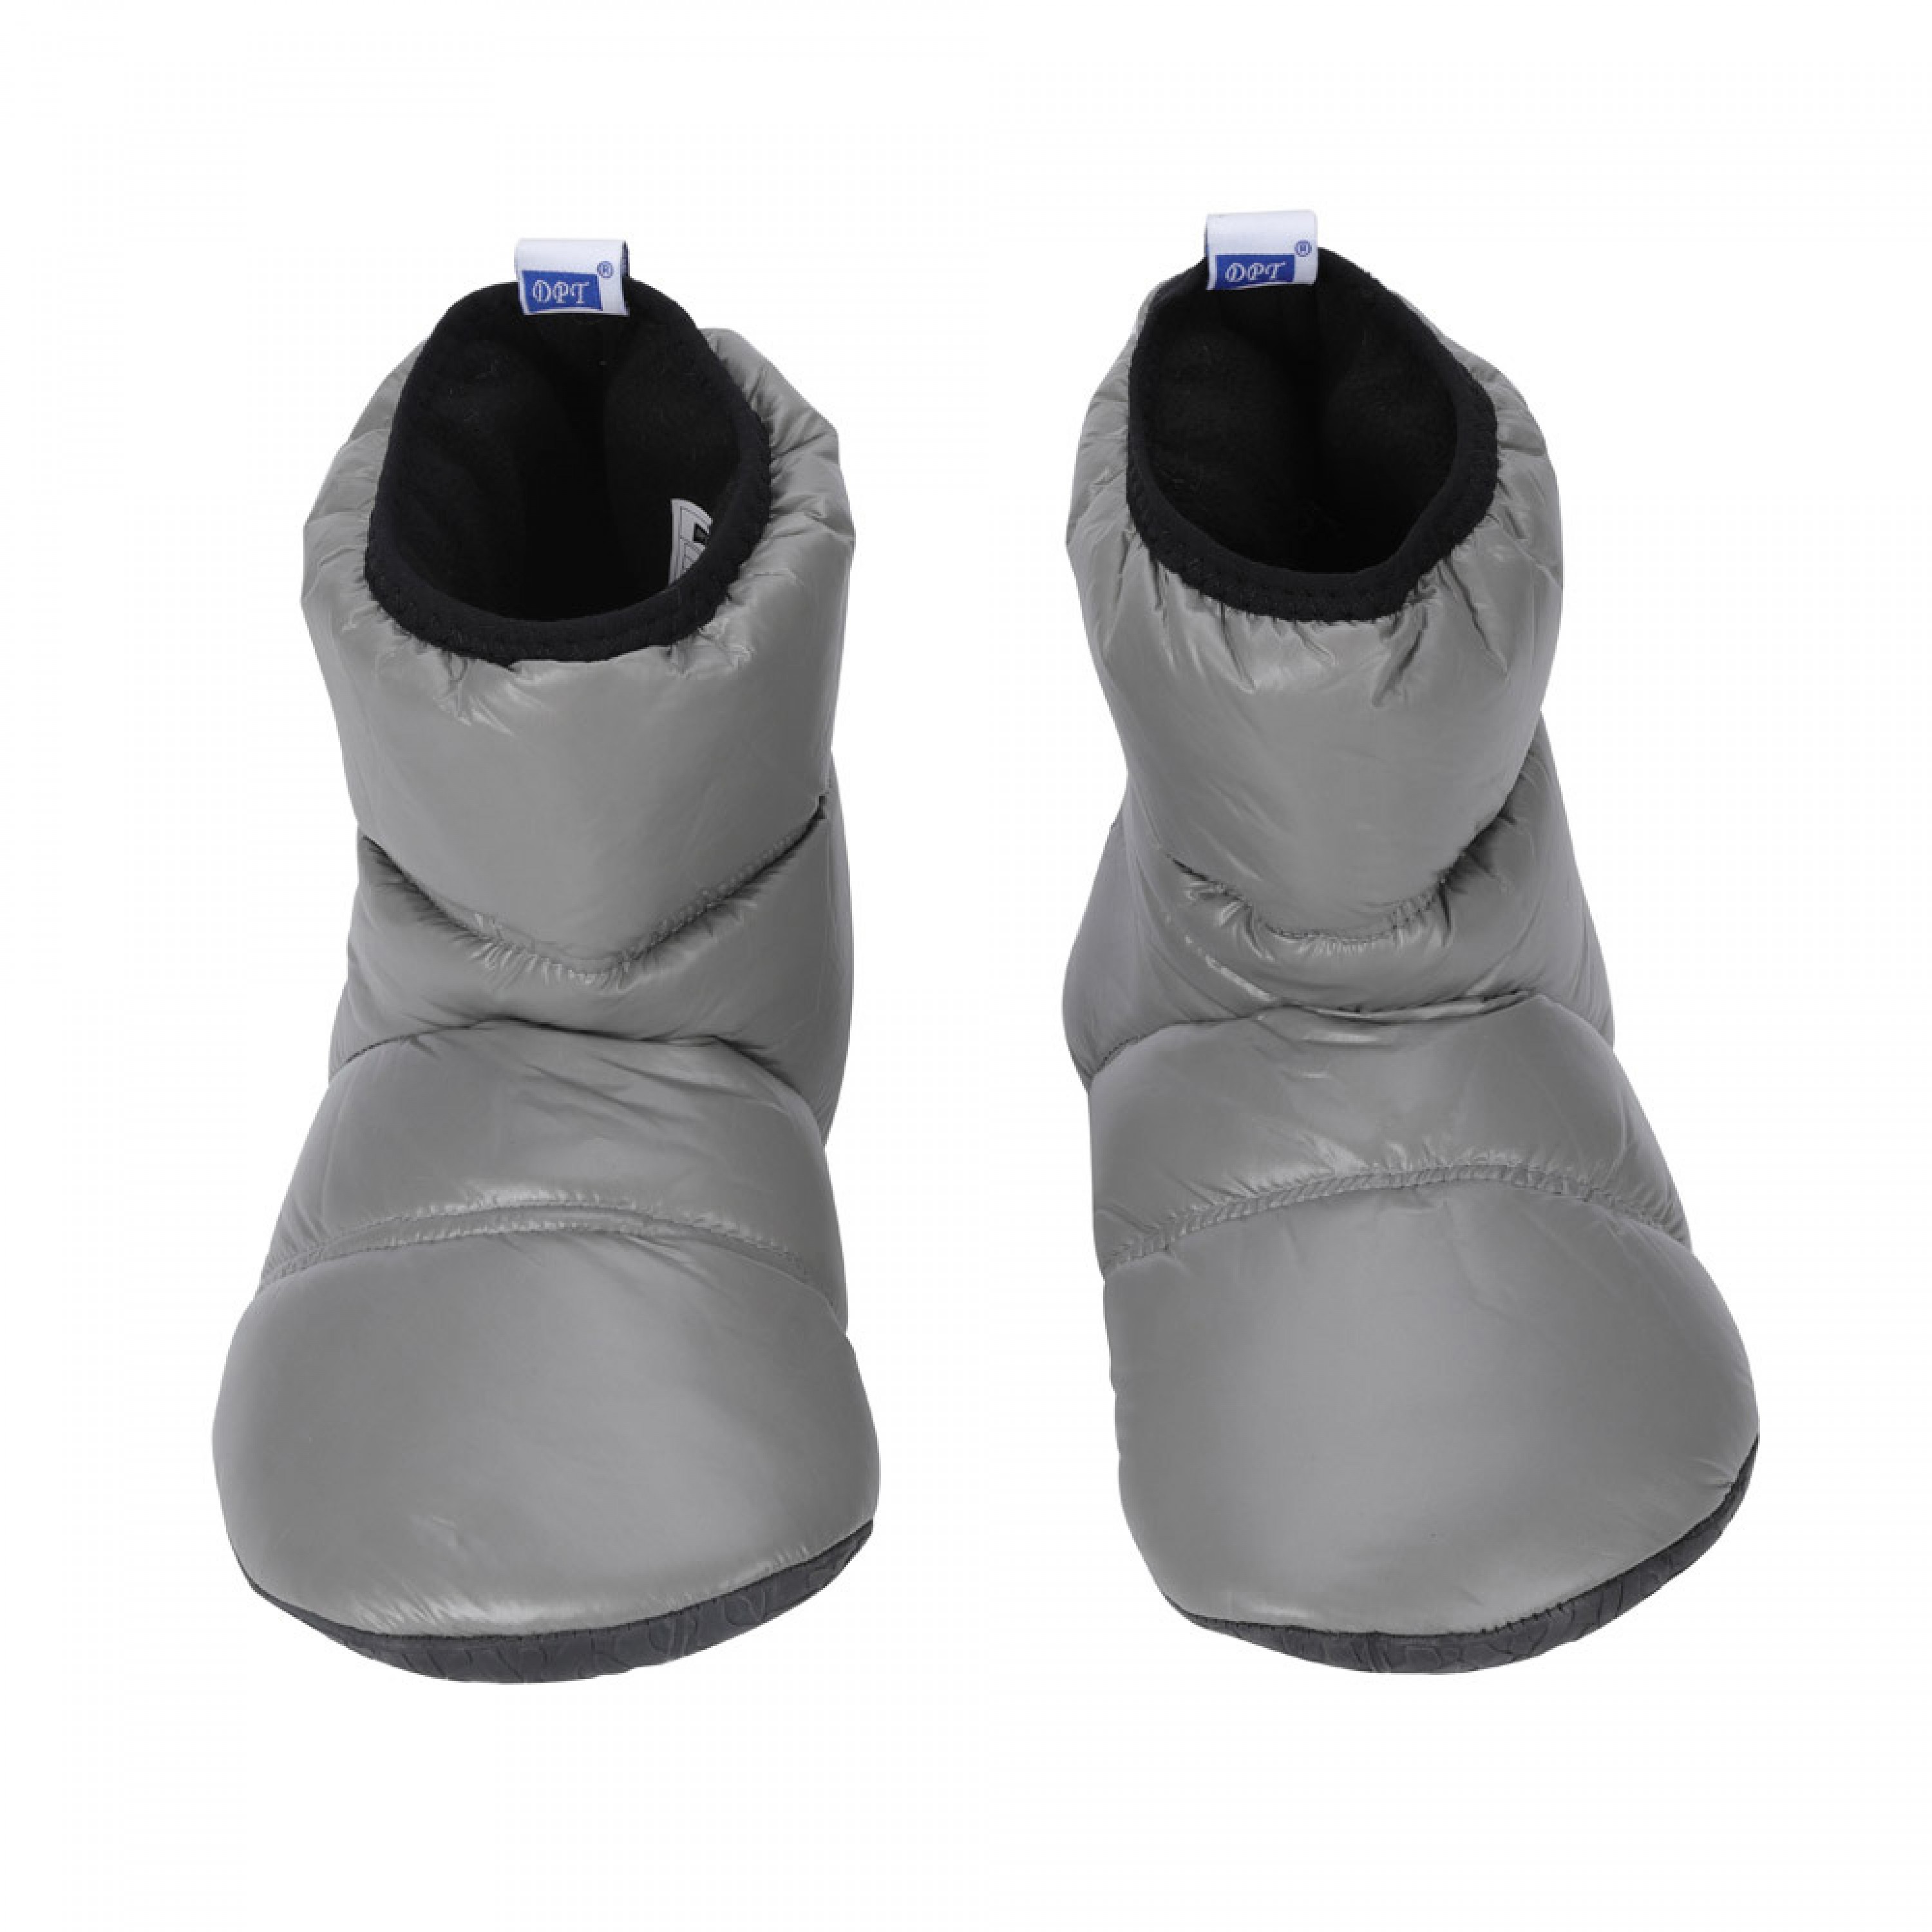 دي بي تي، حذاء تدفئة الاقدام، احذية التخييم والرحلات، رصاصي، XL